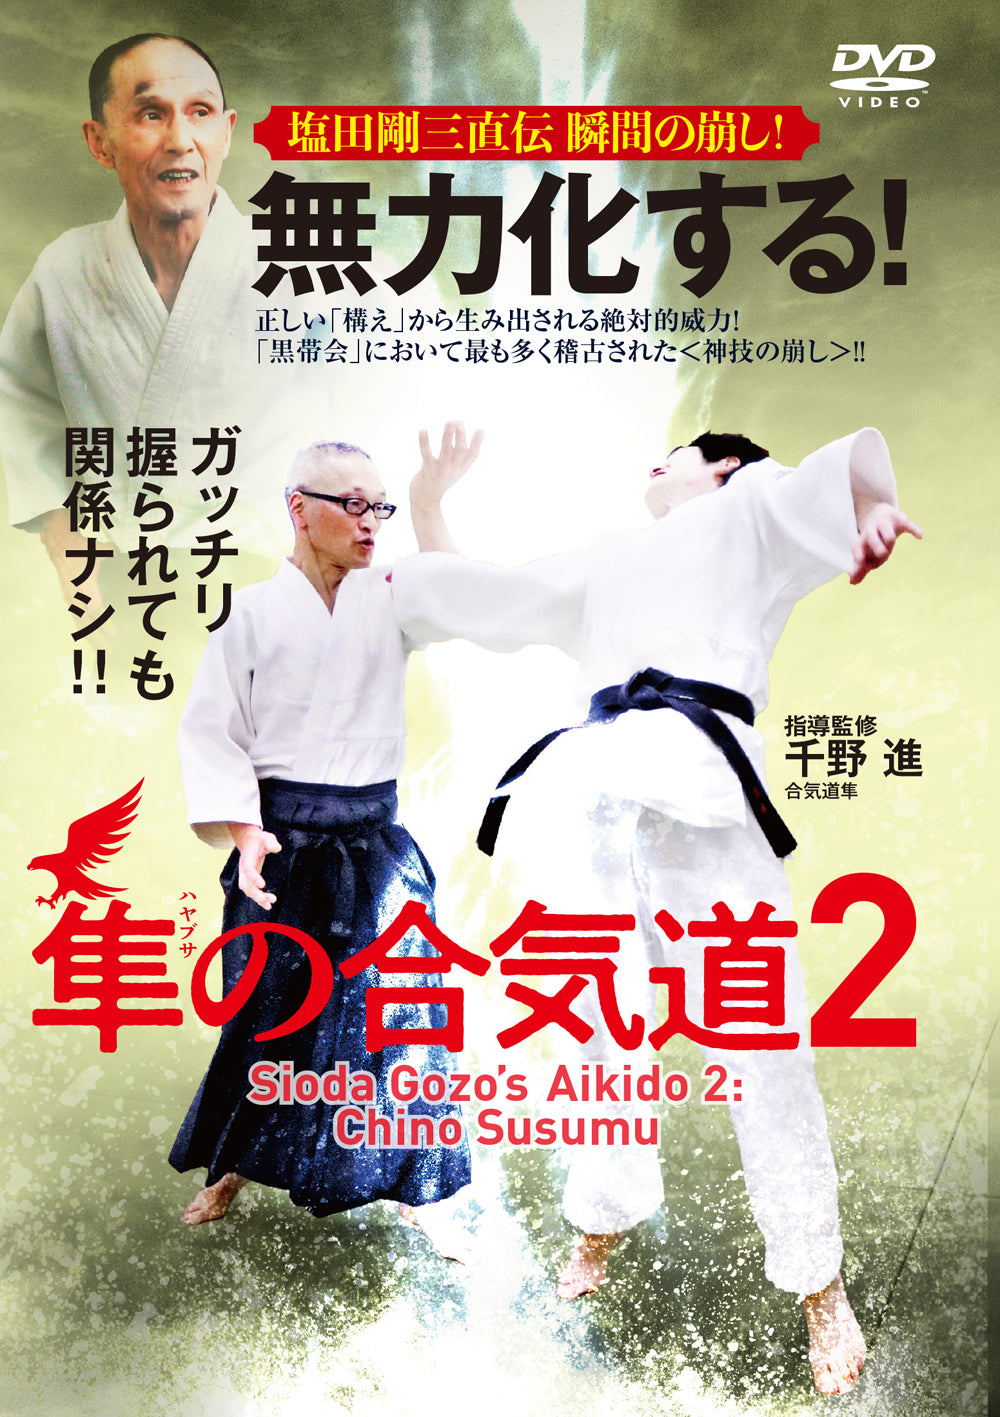 Gozo Shioda's Aikido Vol 2 DVD by Susumu Chino